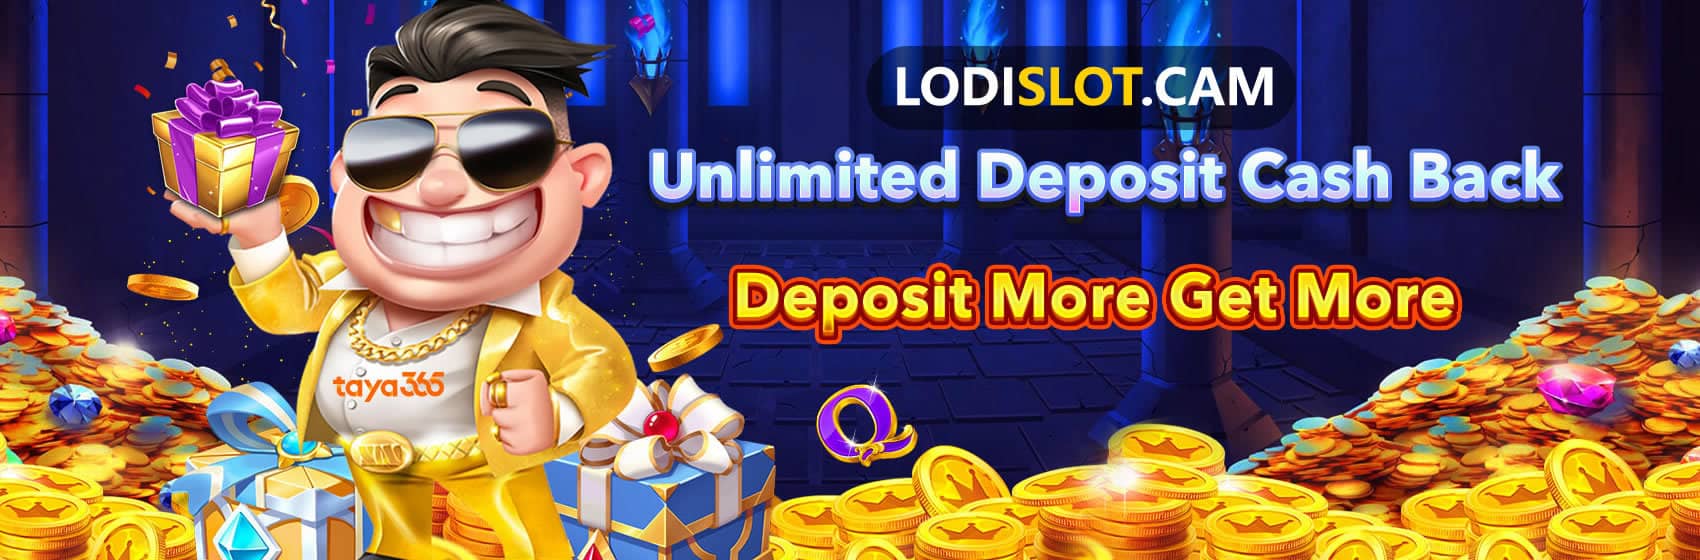 lodislot deposit more get more